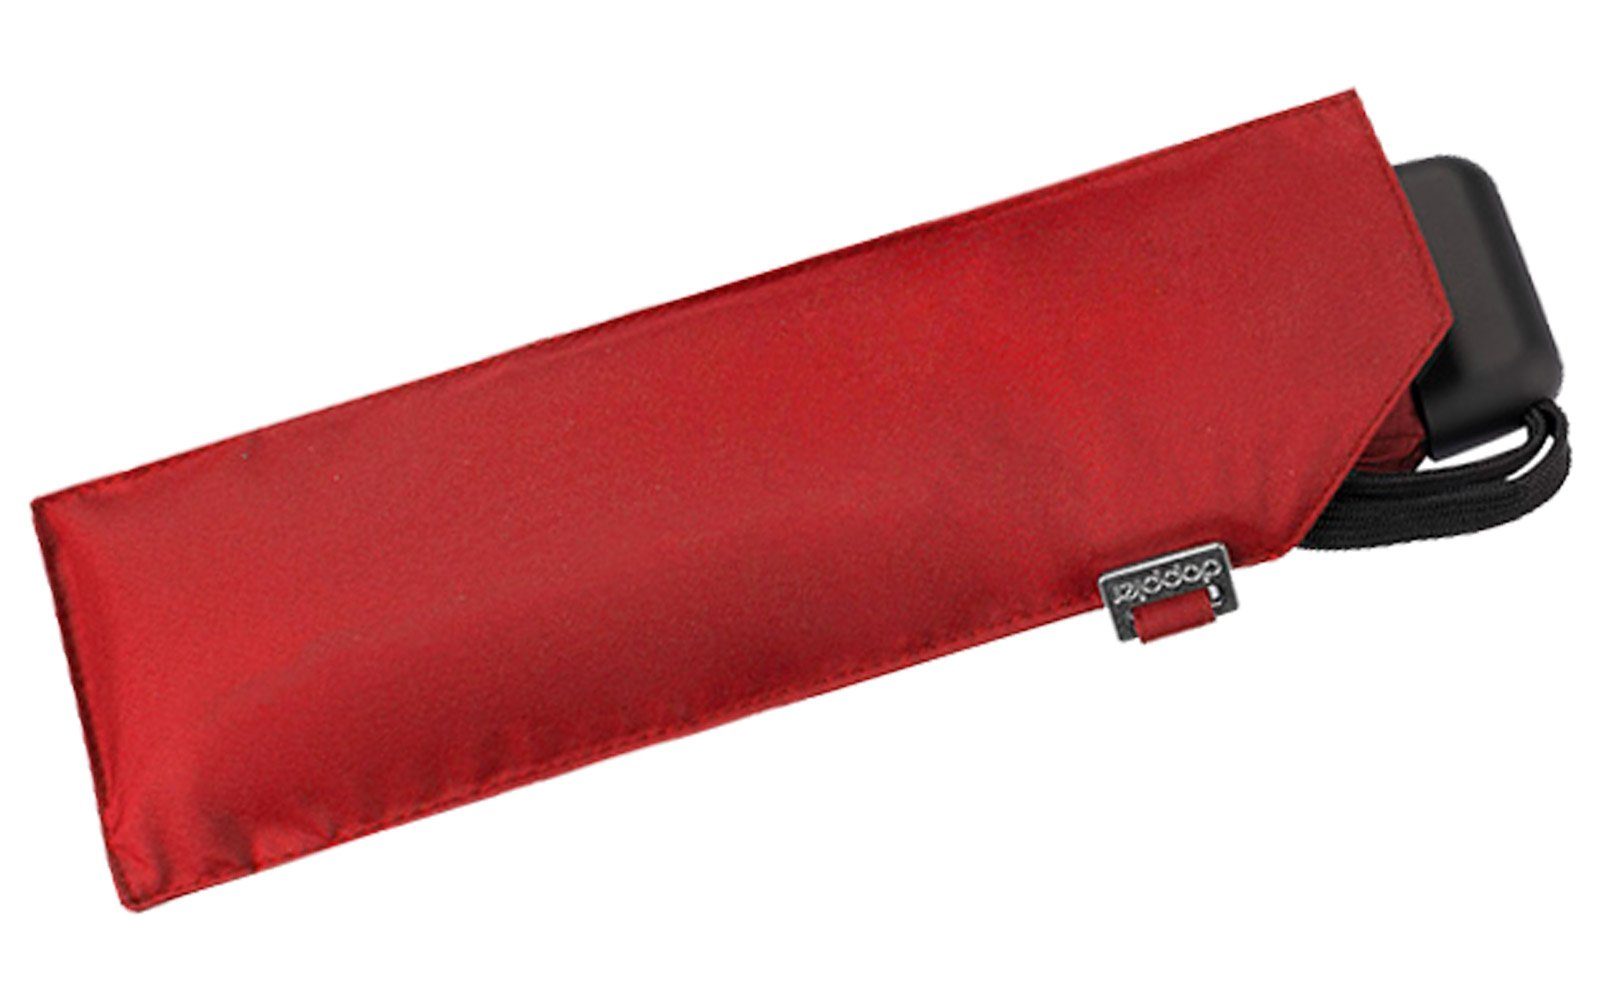 rot leichter dieser Taschenregenschirm Schirm Tasche, für Platz überall findet jede und ein doppler® treue flacher Begleiter